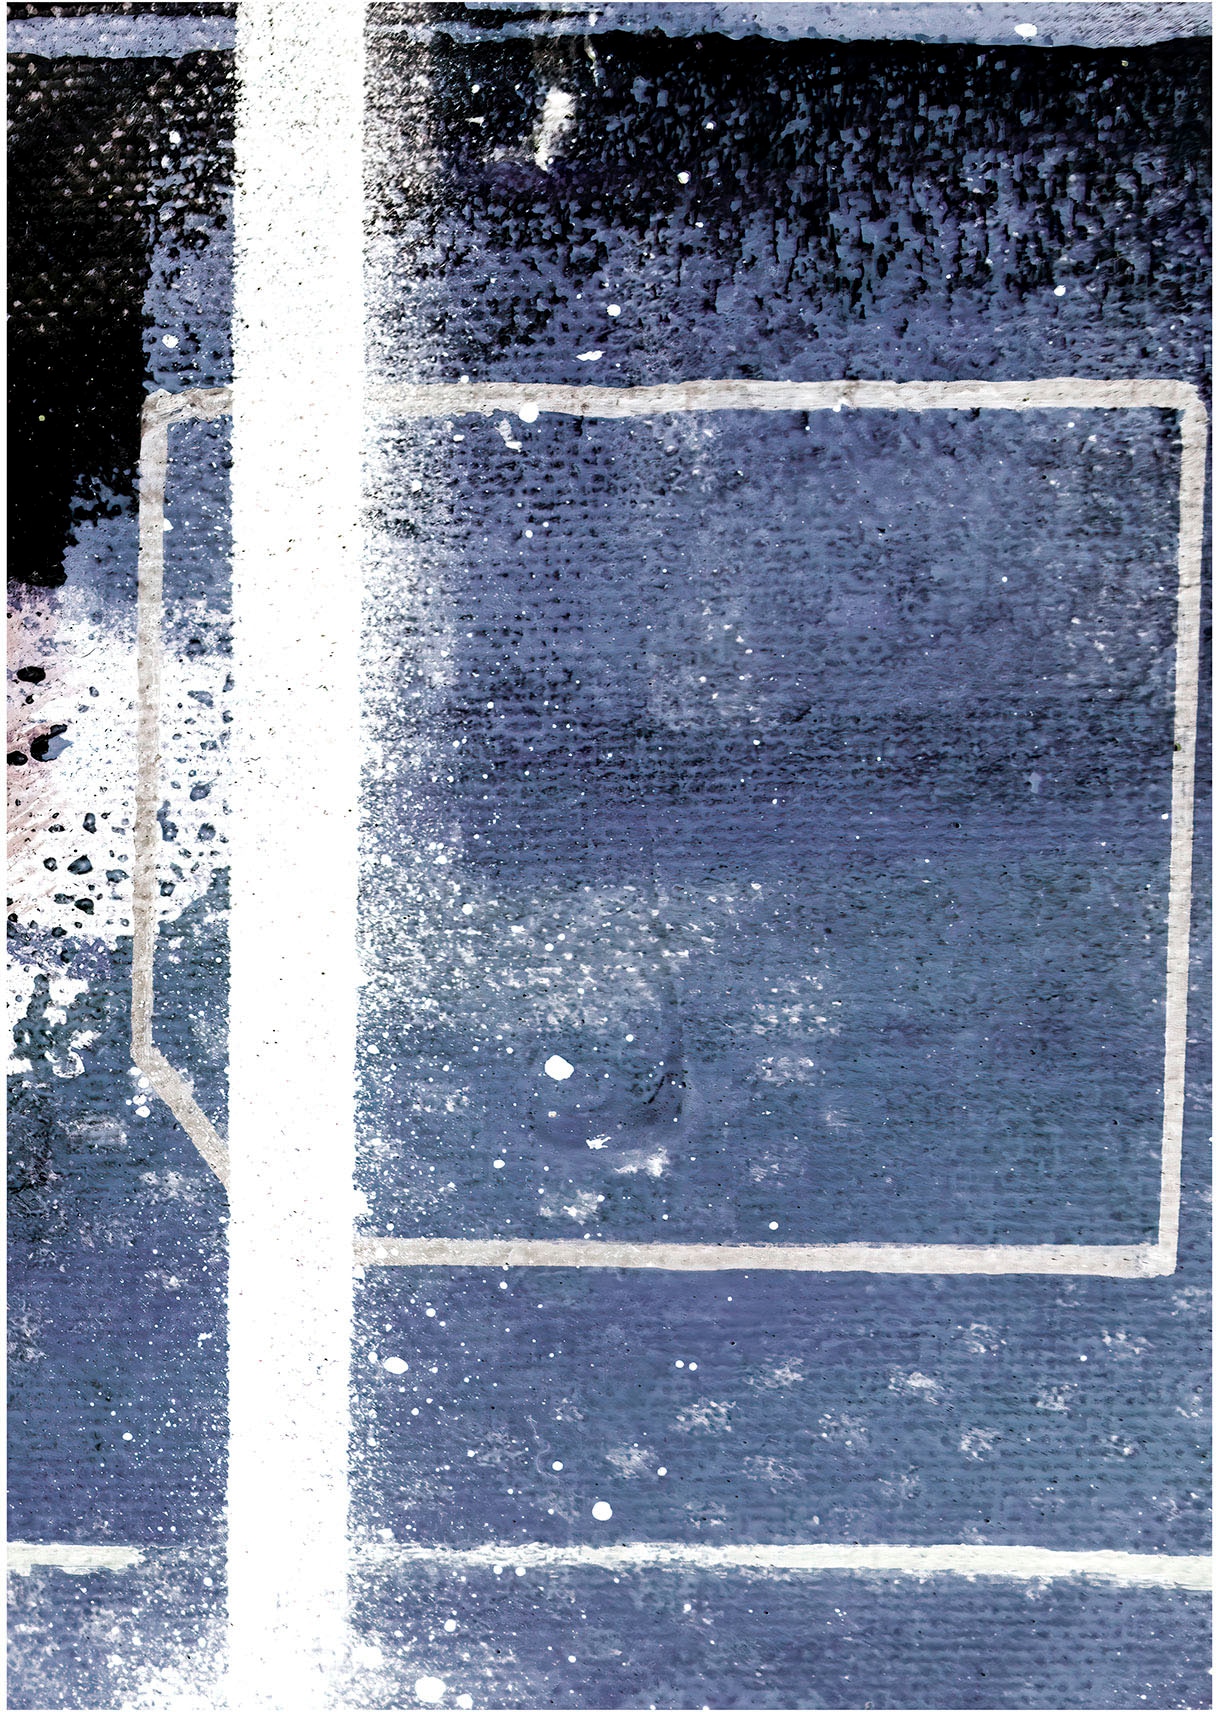 Komar Wandbild »Bluely Arrangement«, (1 St.), Deutsches Premium-Poster Fotopapier mit seidenmatter Oberfläche und hoher Lichtbeständigkeit. Für fotorealistische Drucke mit gestochen scharfen Details und hervorragender Farbbrillanz.